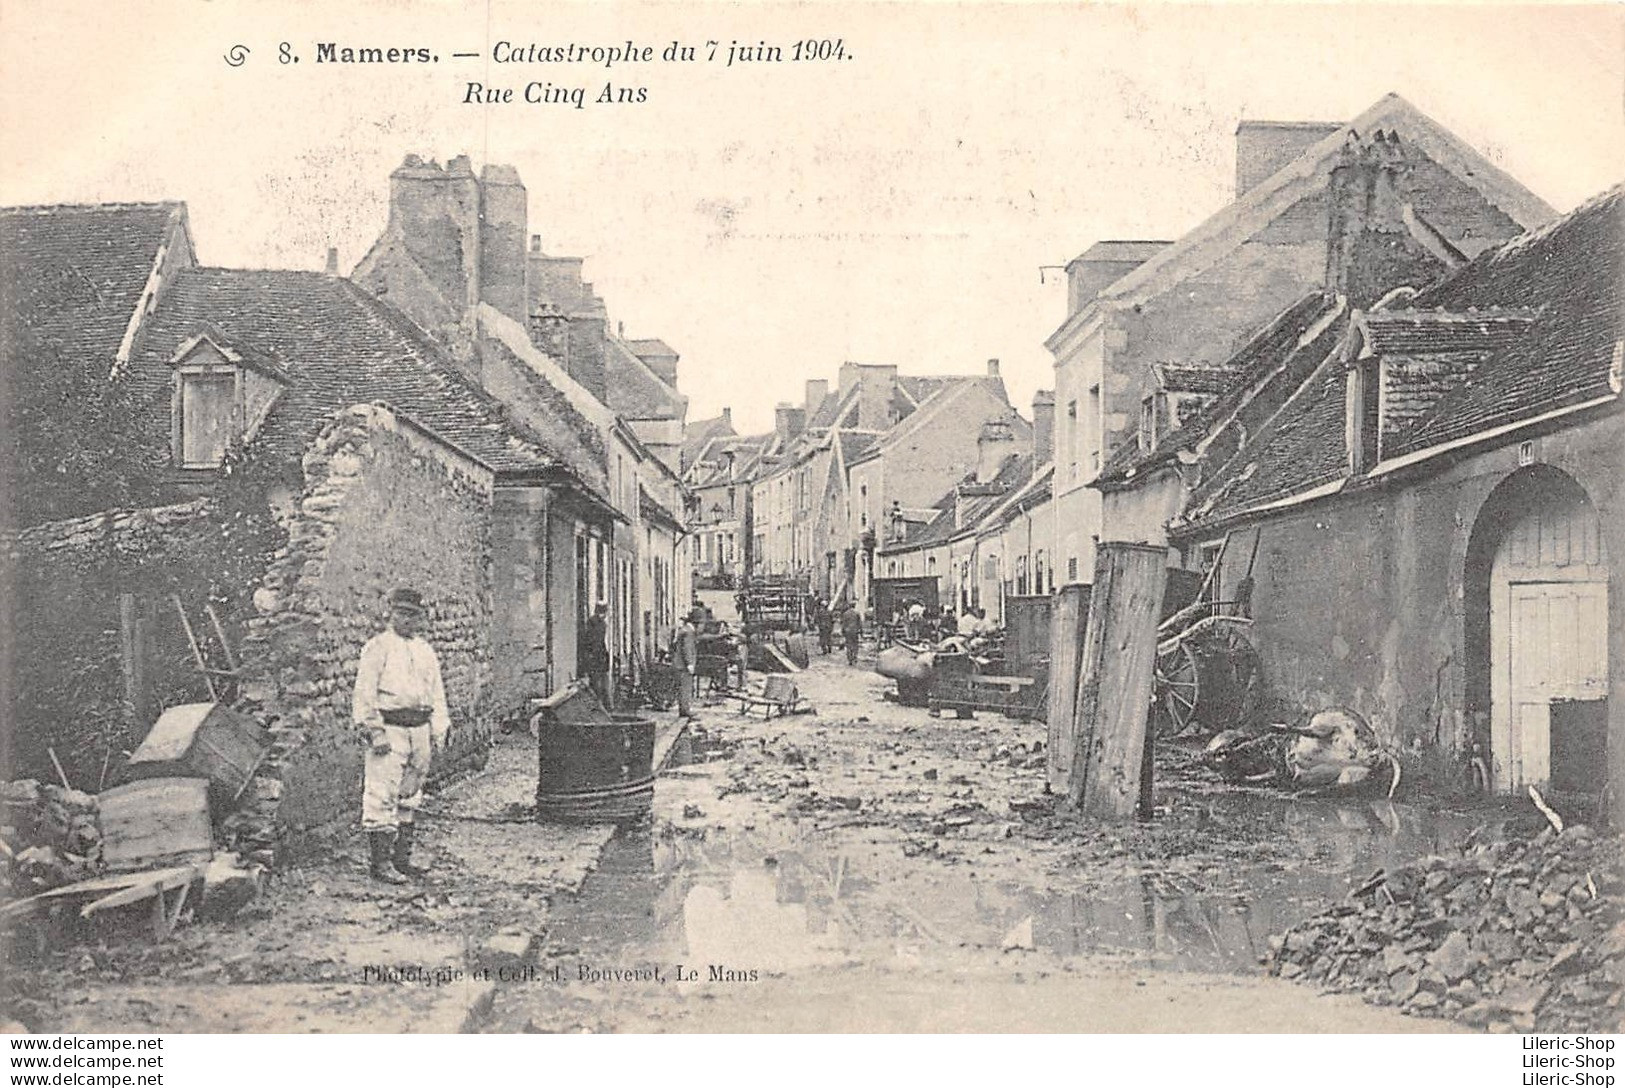 Catastrophe du 7 juin 1904 - Rue Cinq ans - Soldat du 115ème R.I - Phototypie et Coll. J. Bouveret cpa